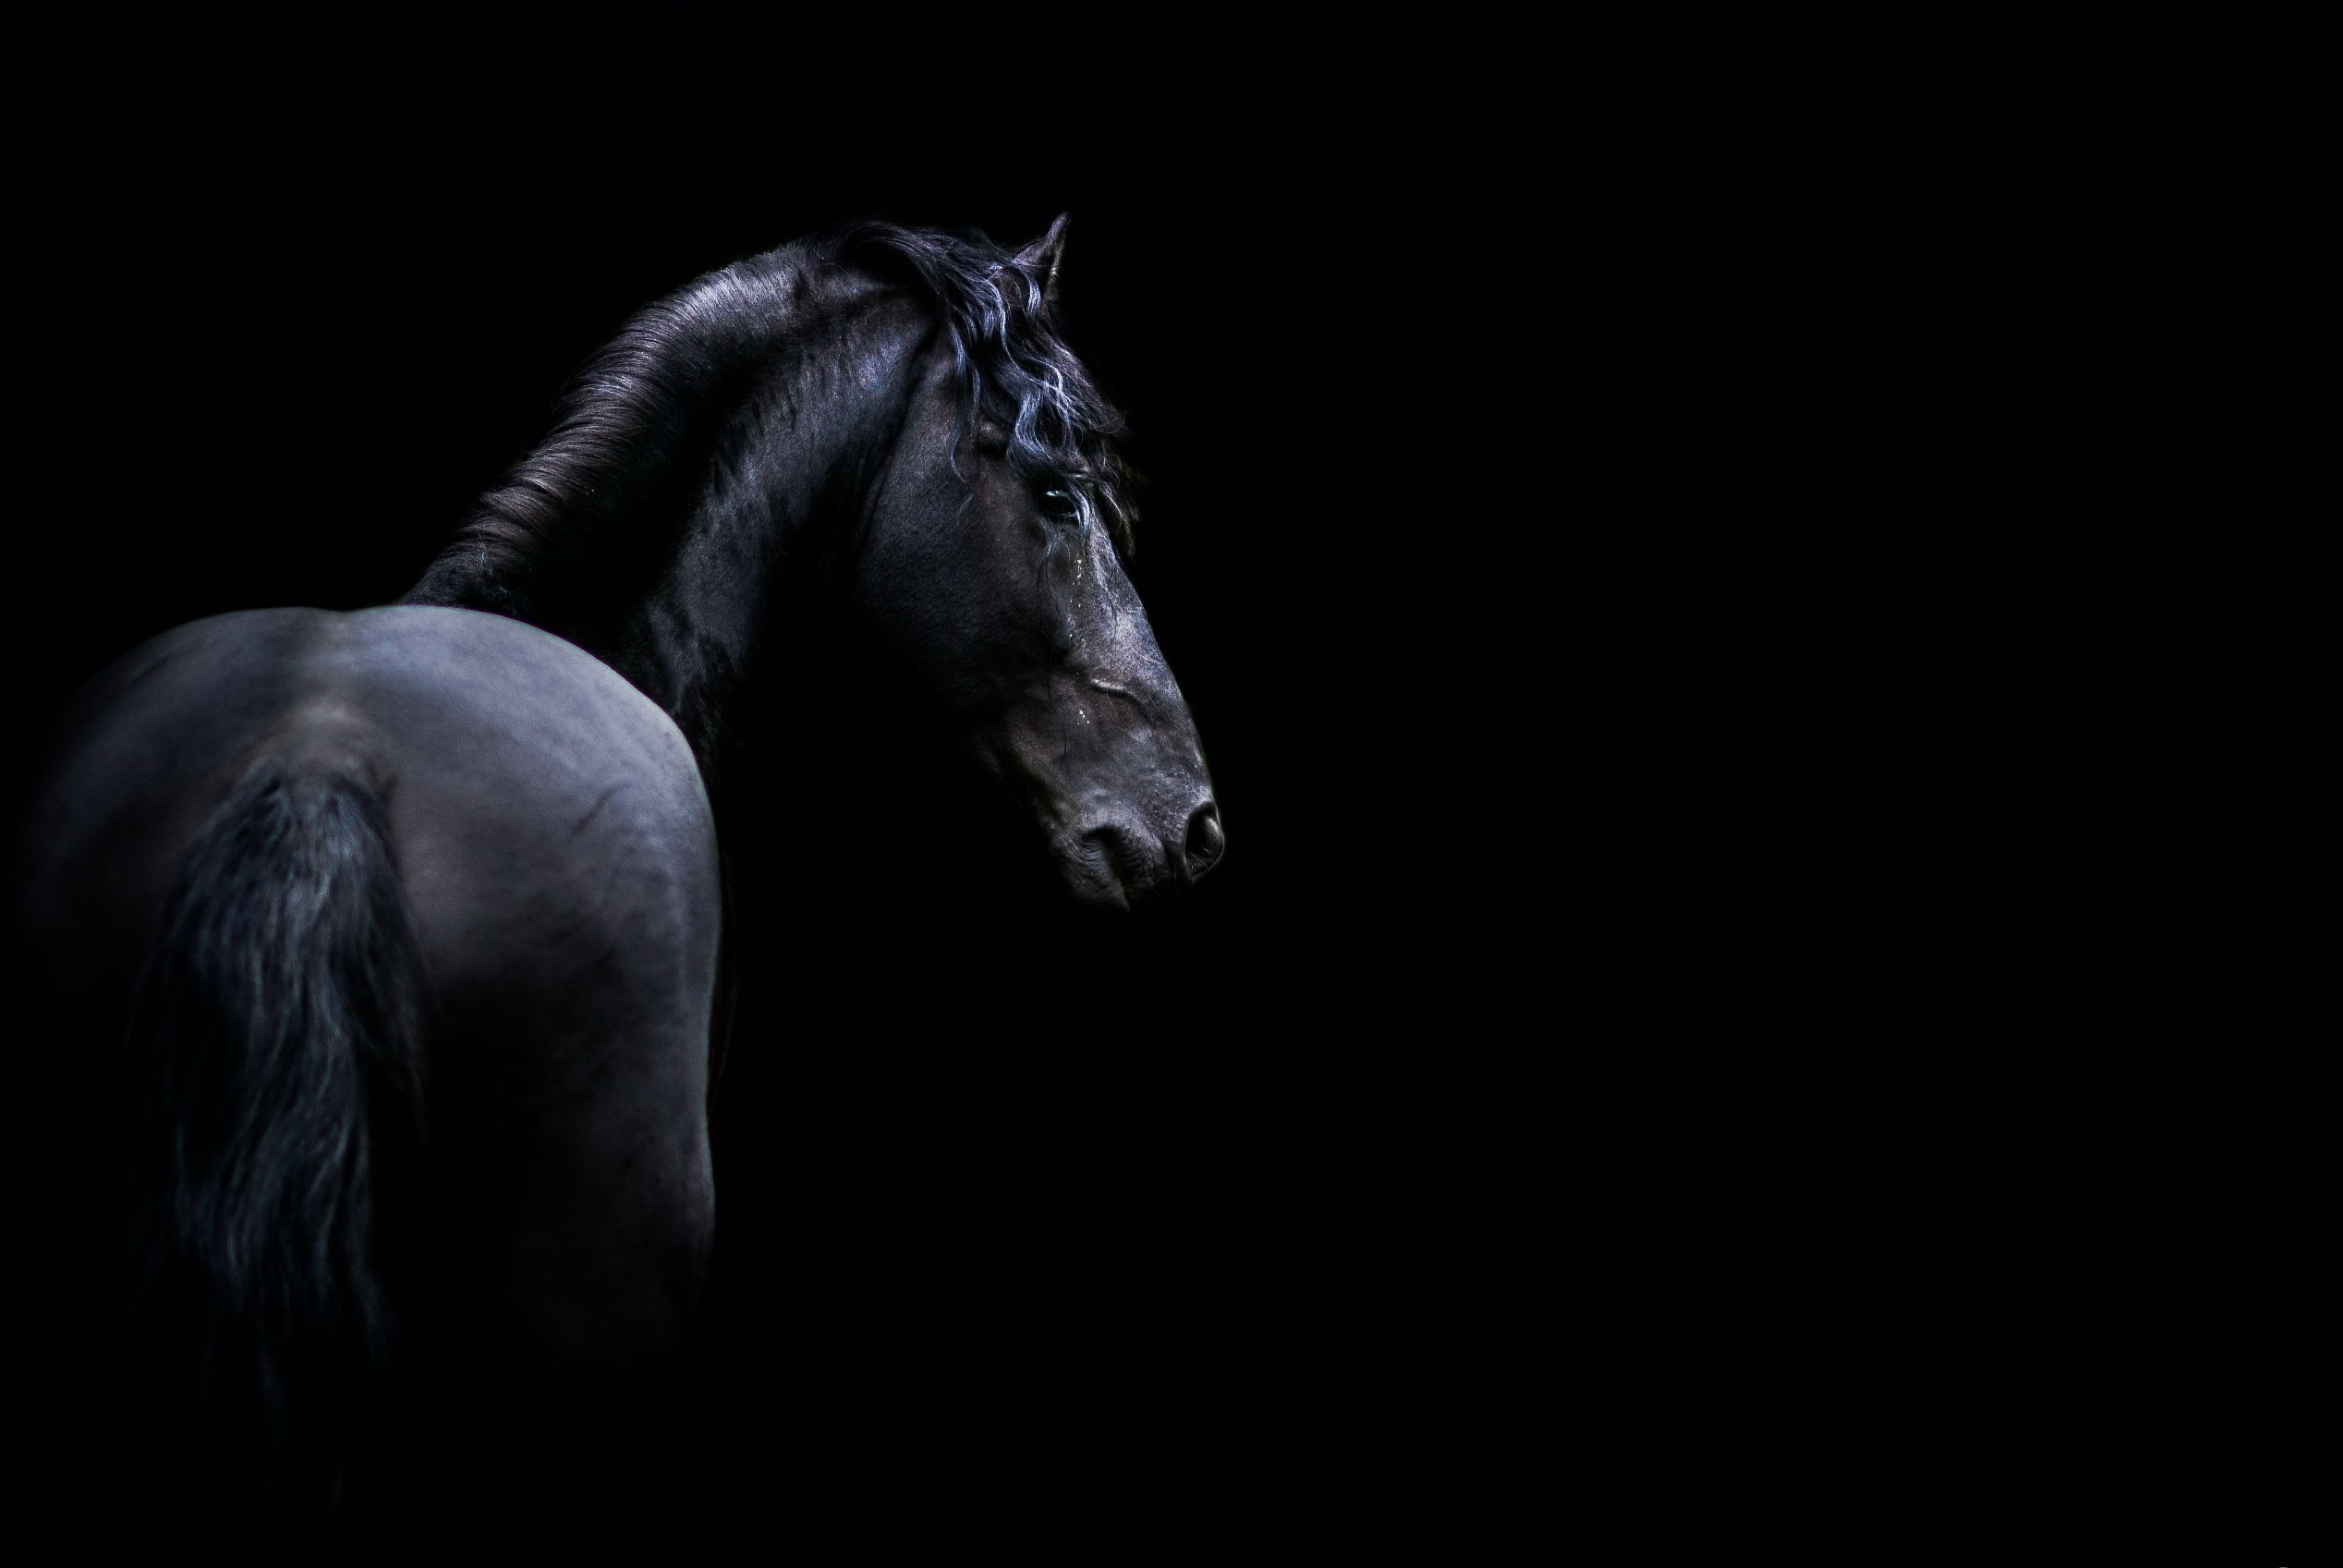 General 2536x1697 dark animals horse mammals black background simple background